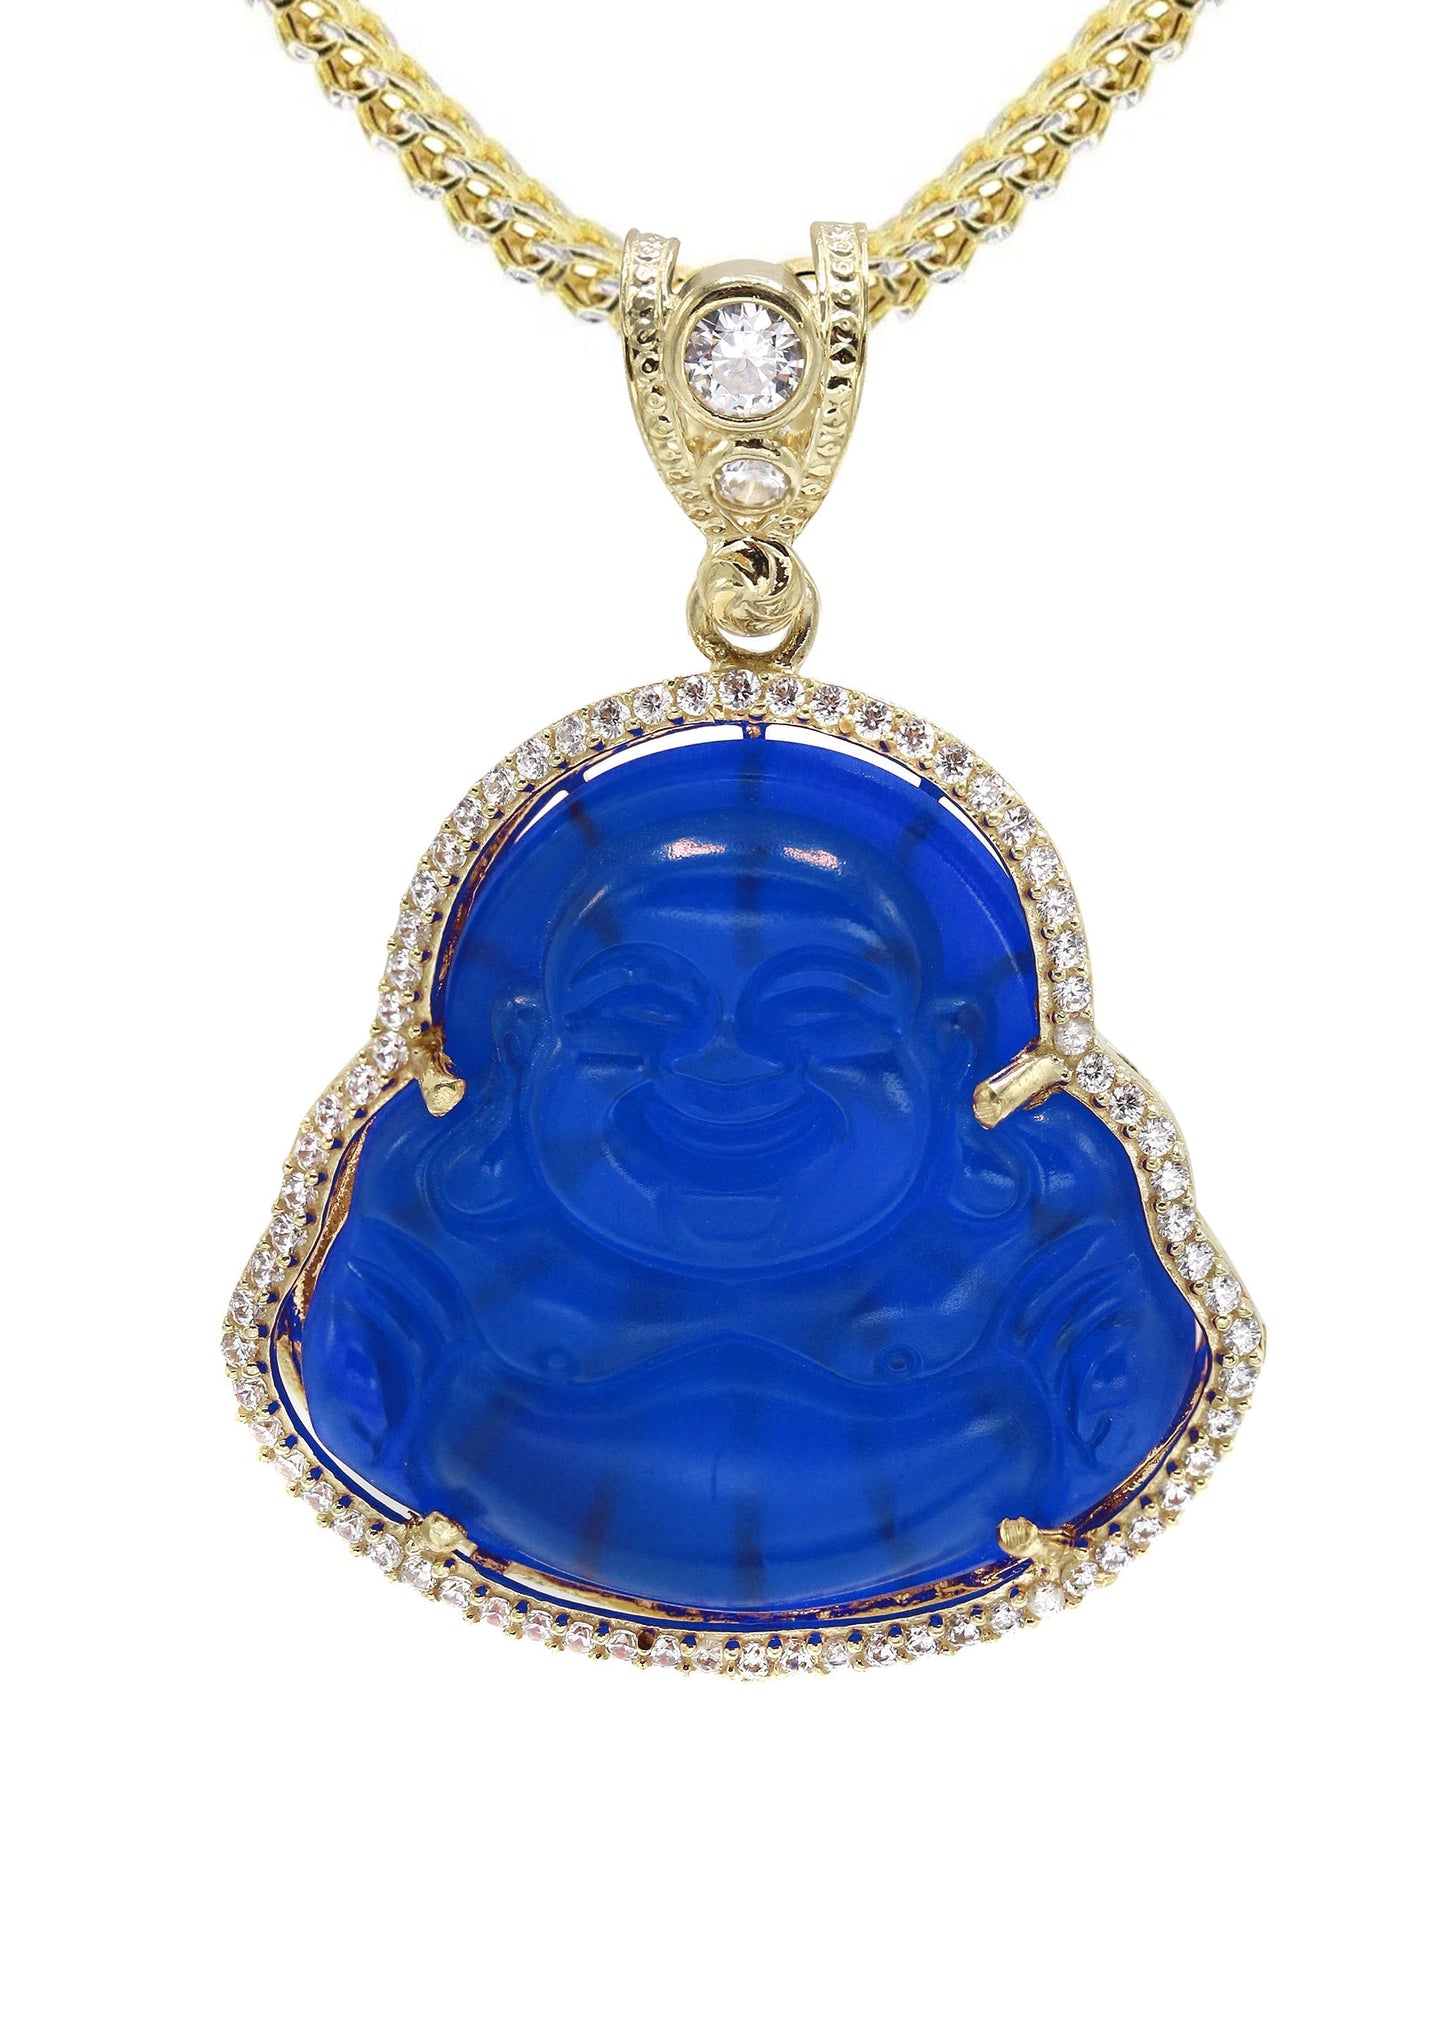 10K Yellow Gold Chain & Cz Blue Buddha Pendant